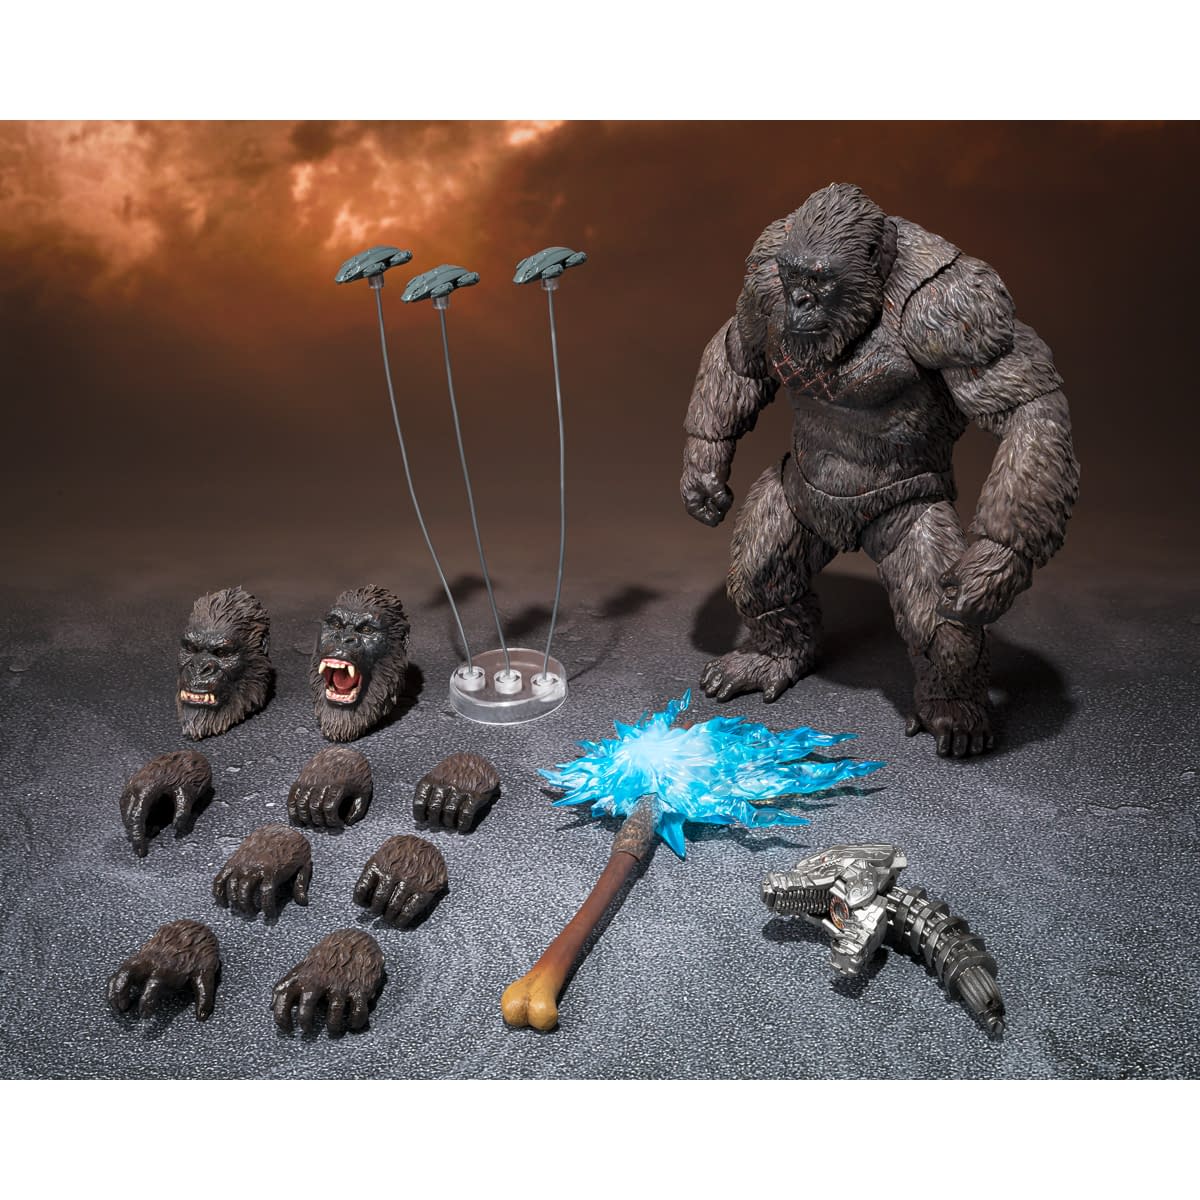 Exclusive King Kong S.H.MonsterArts Godzilla Vs. Kong Figure Debuts